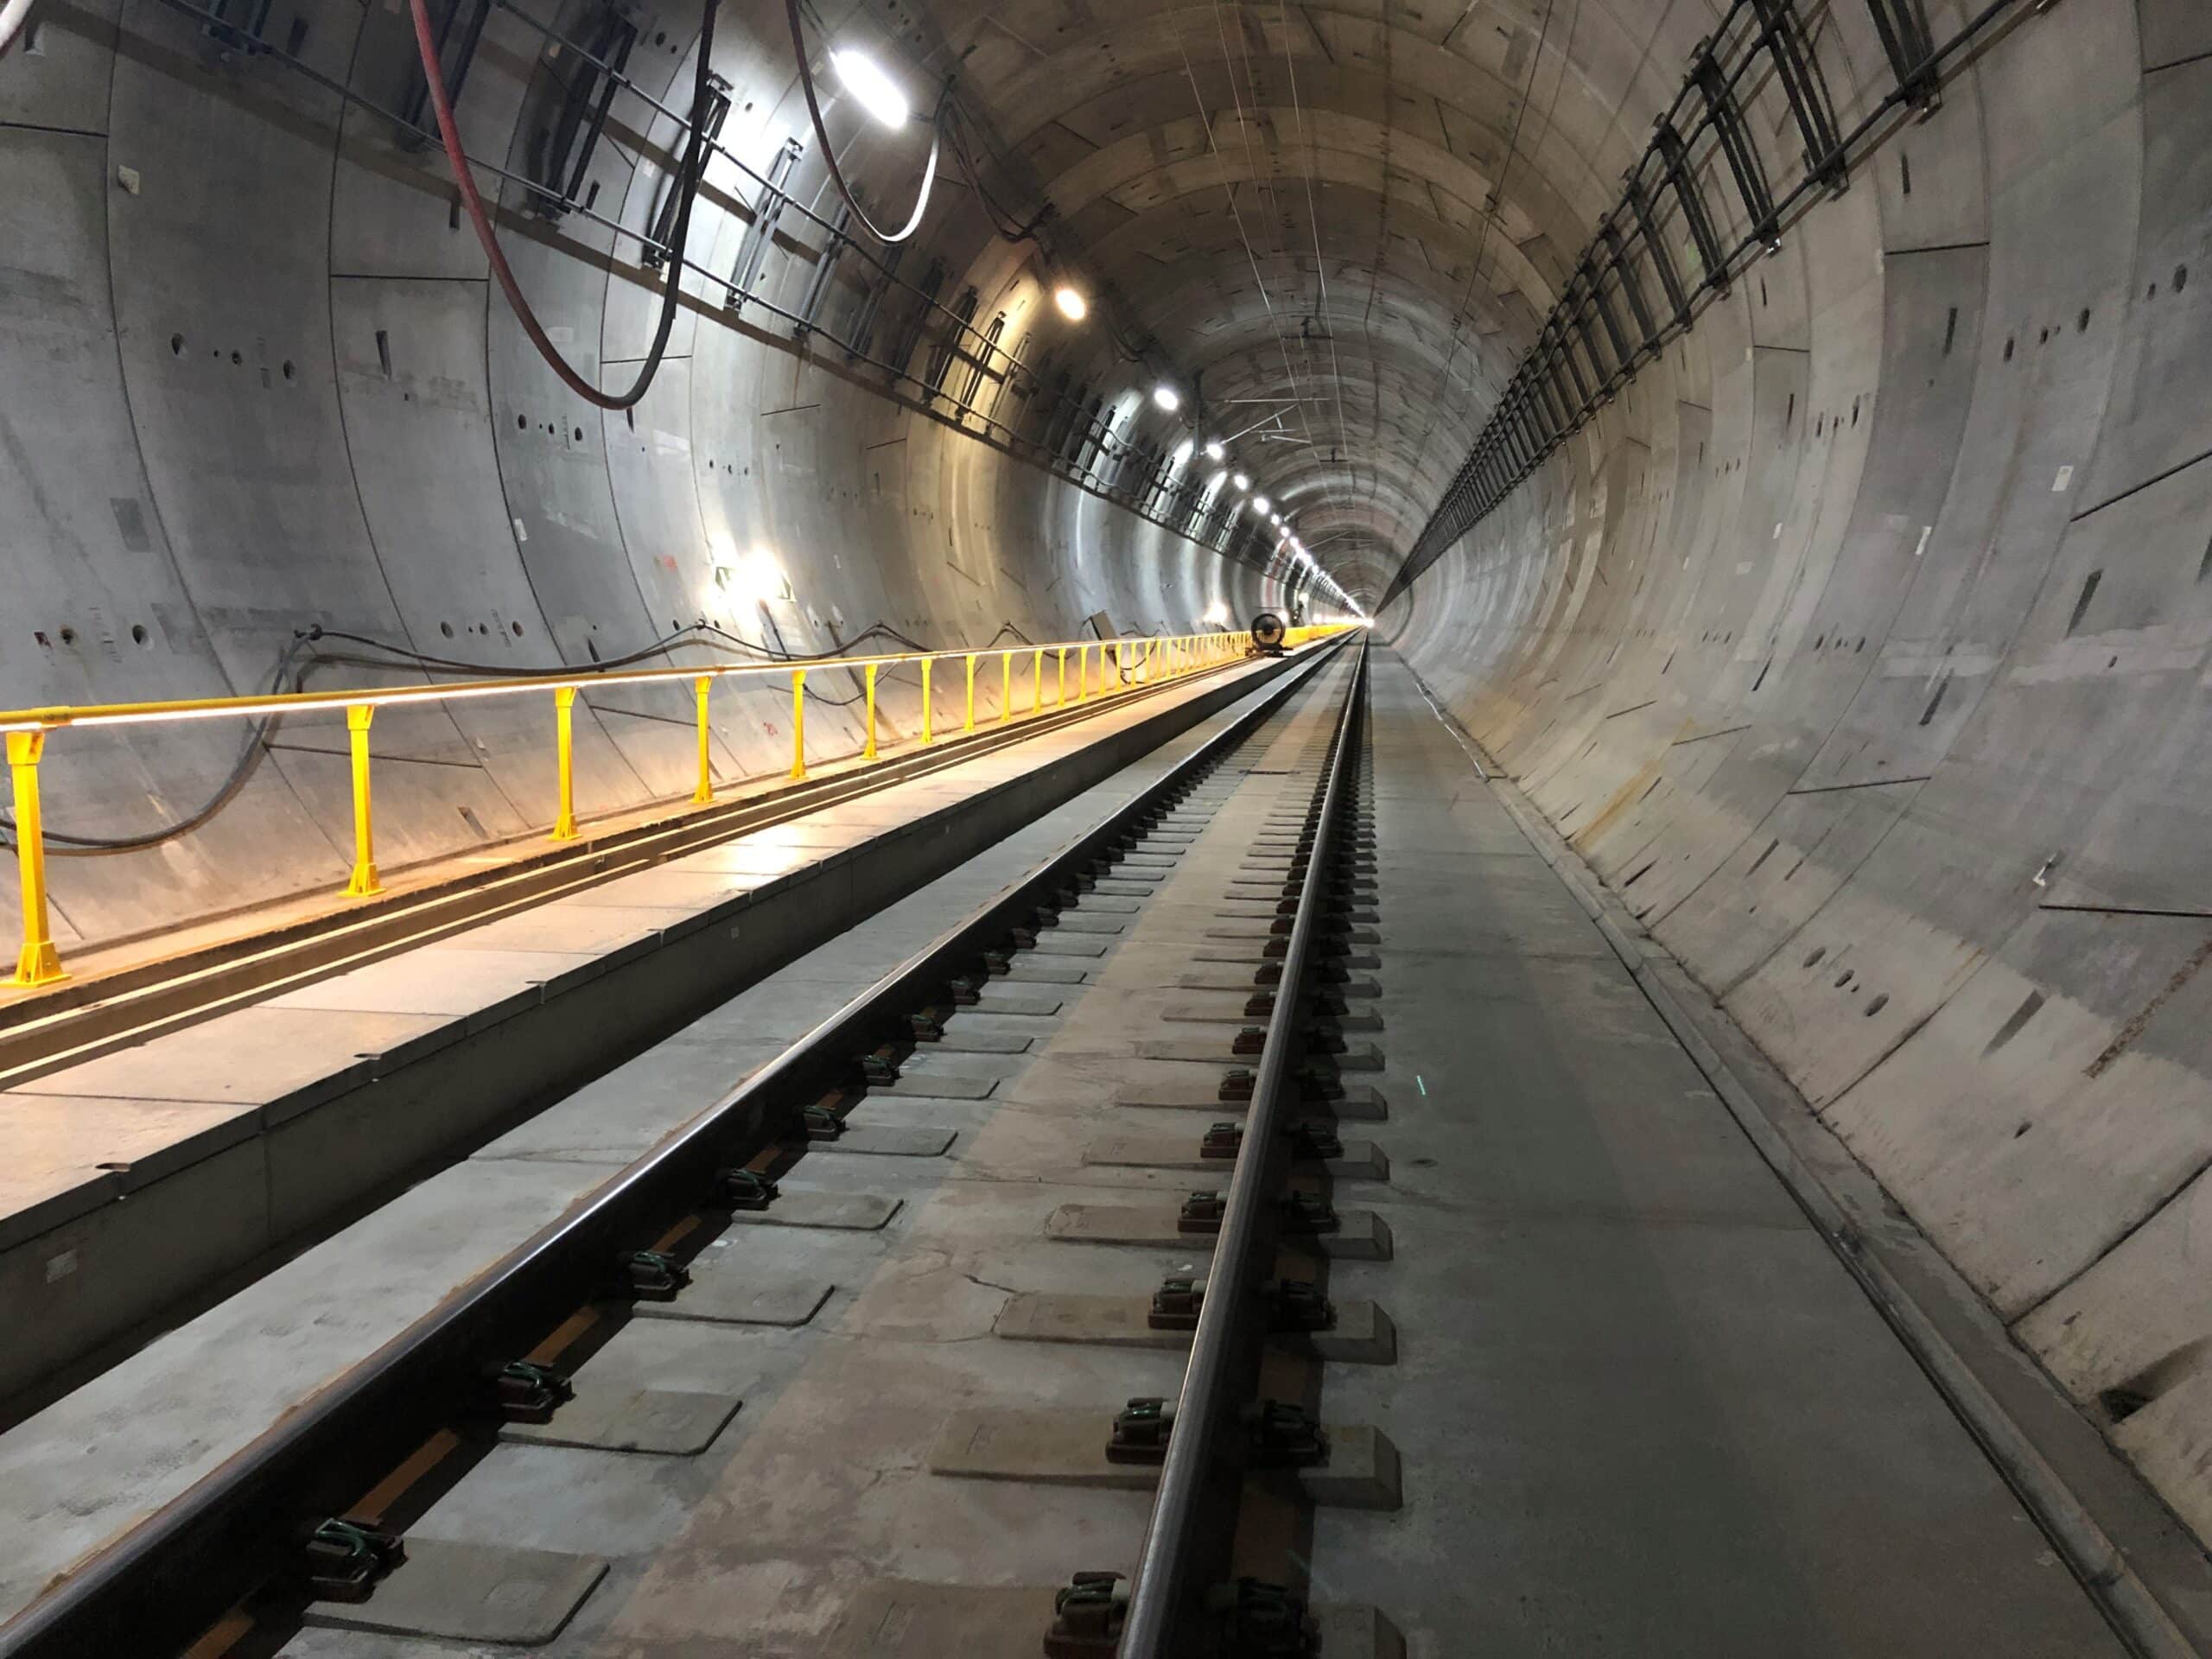 Blixtunnelen har to tunnelløp, og arbeidene vil gjennomføres i ett løp om gangen slik at togene hele tiden kan benytte tunnelen i en retning.